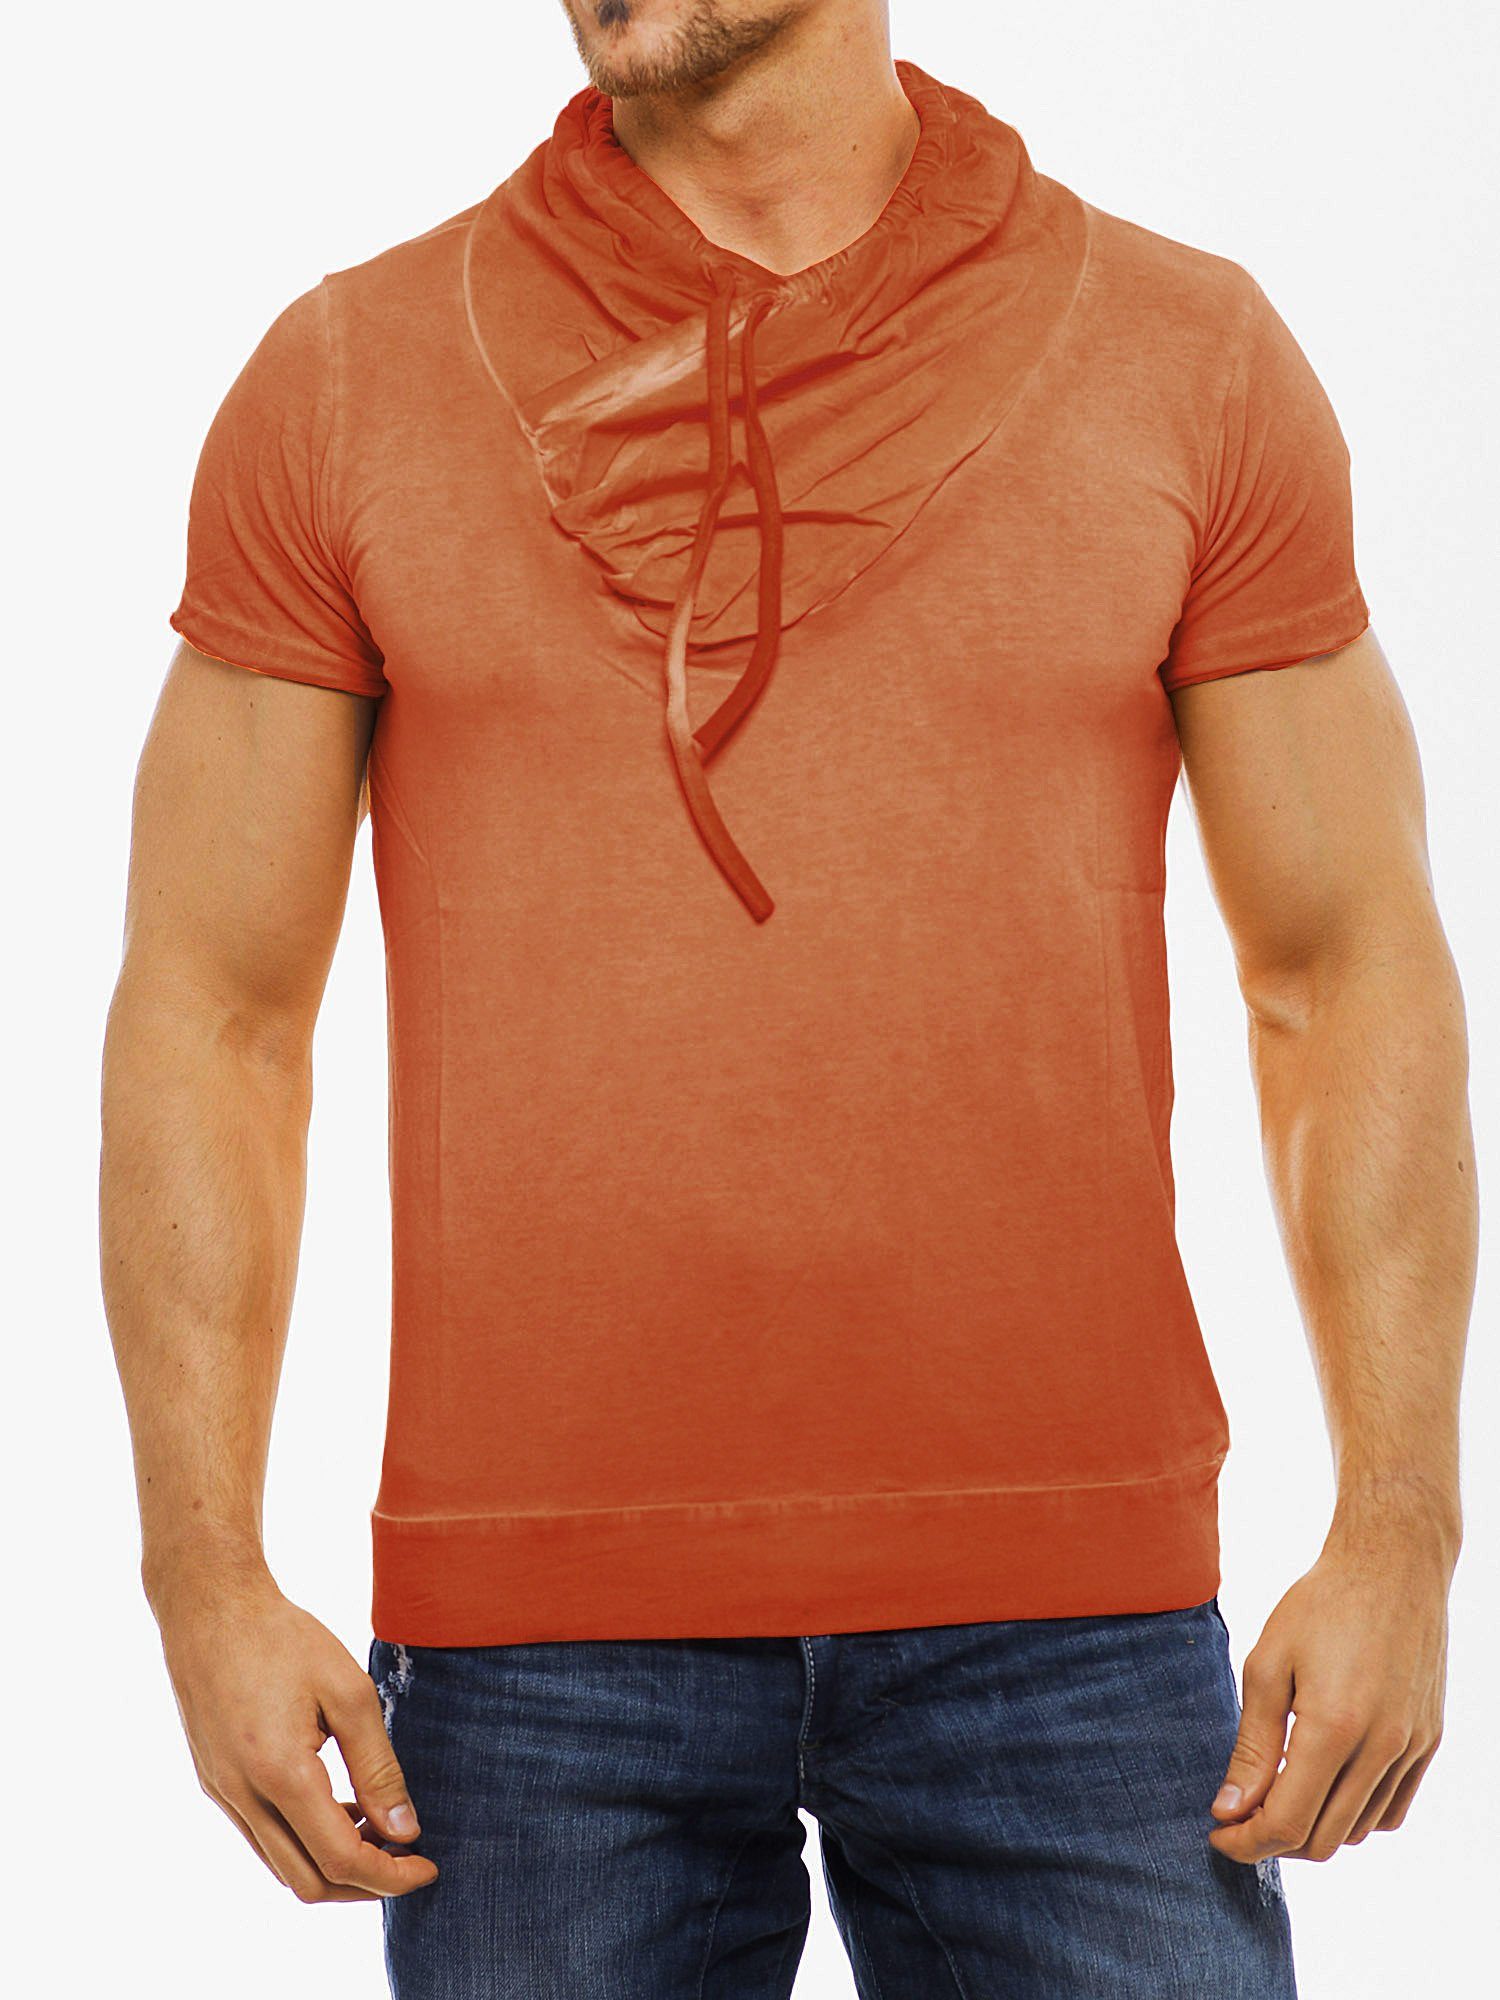 RMK T-Shirt T-Shirts Modelle mit Schal-Kragen, Streetwear Freizeit Braun (ohne Tasche)